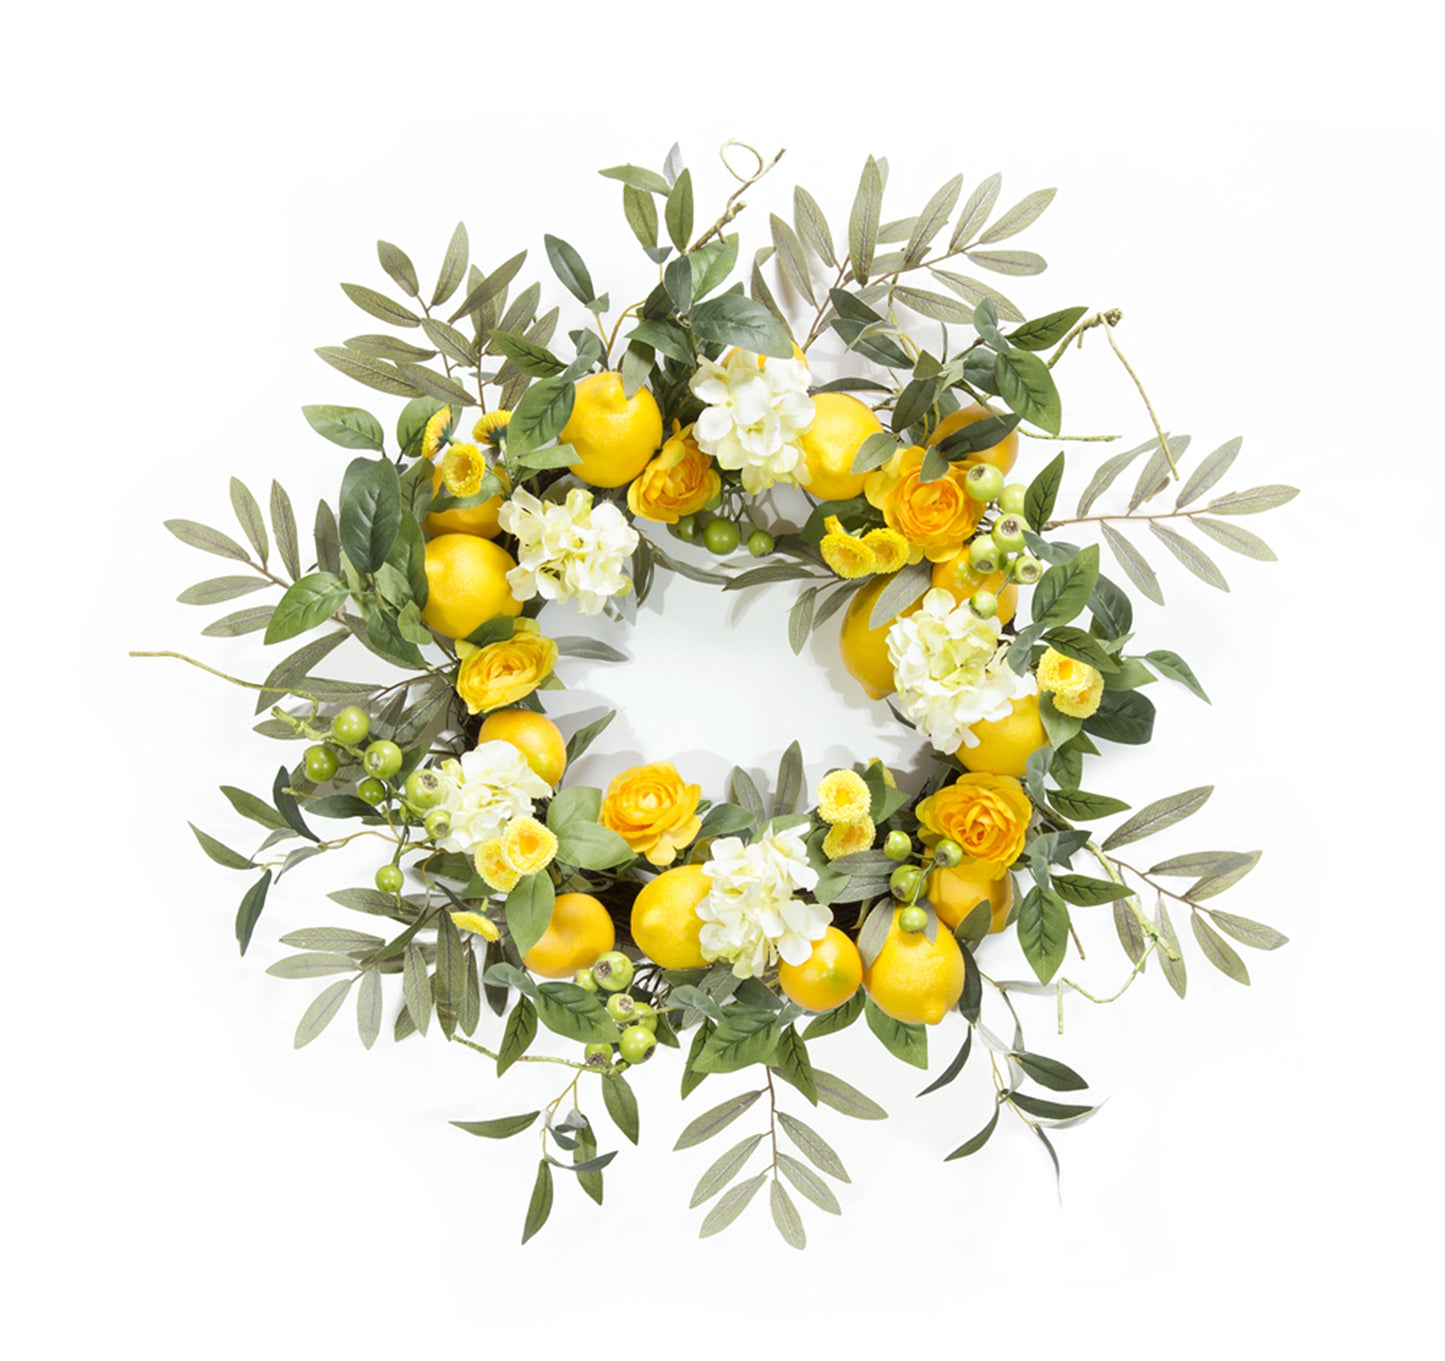 Lemon Floral Wreath 22"D